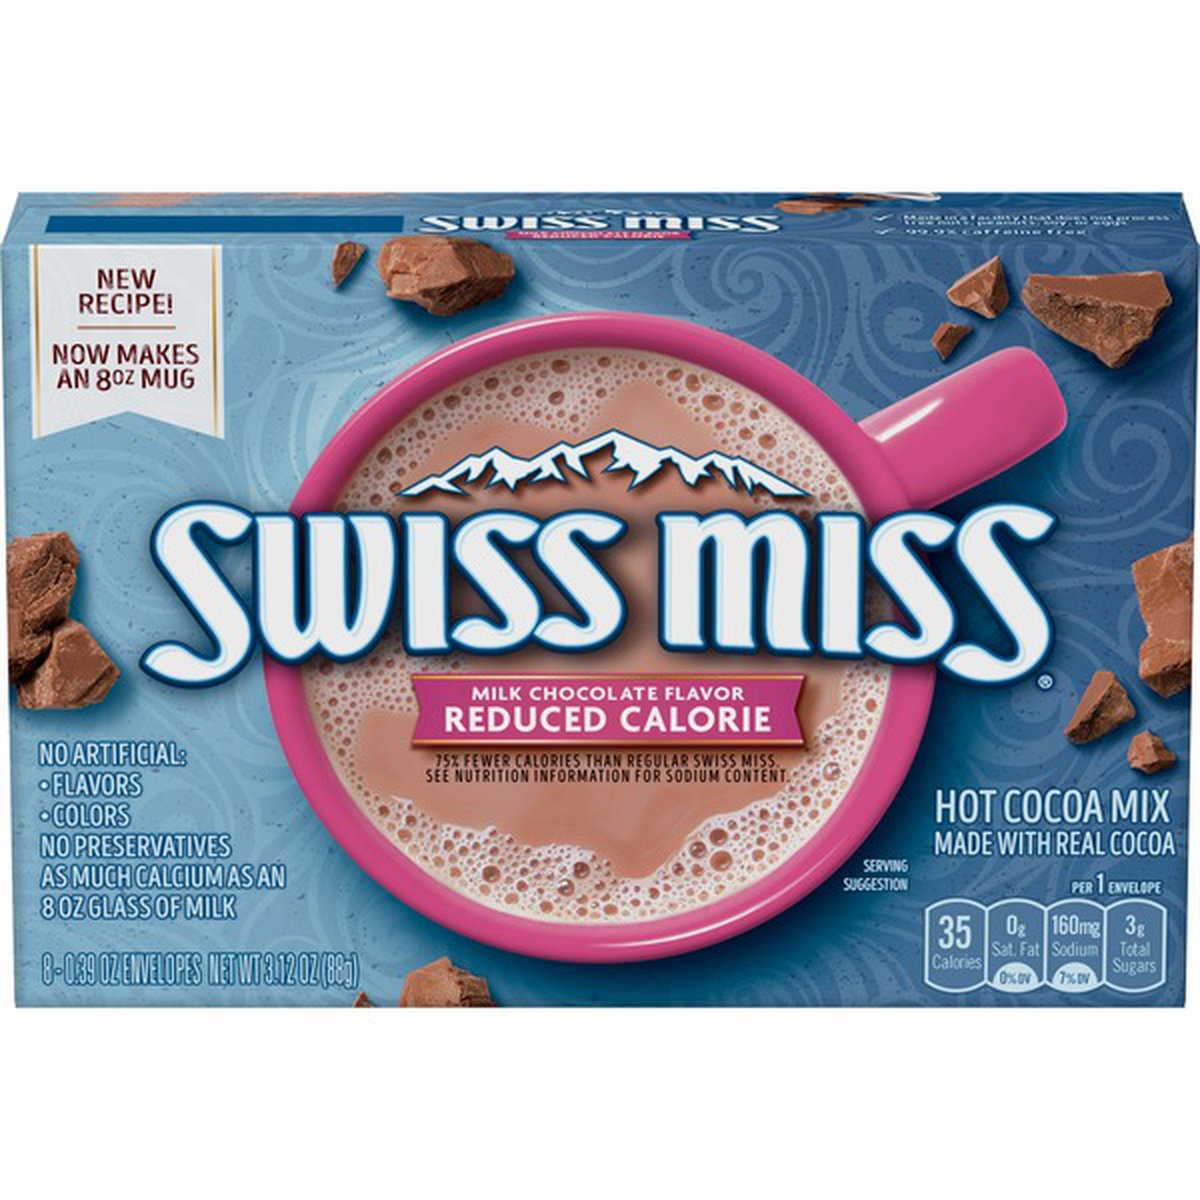 Swiss Miss hot chocolate